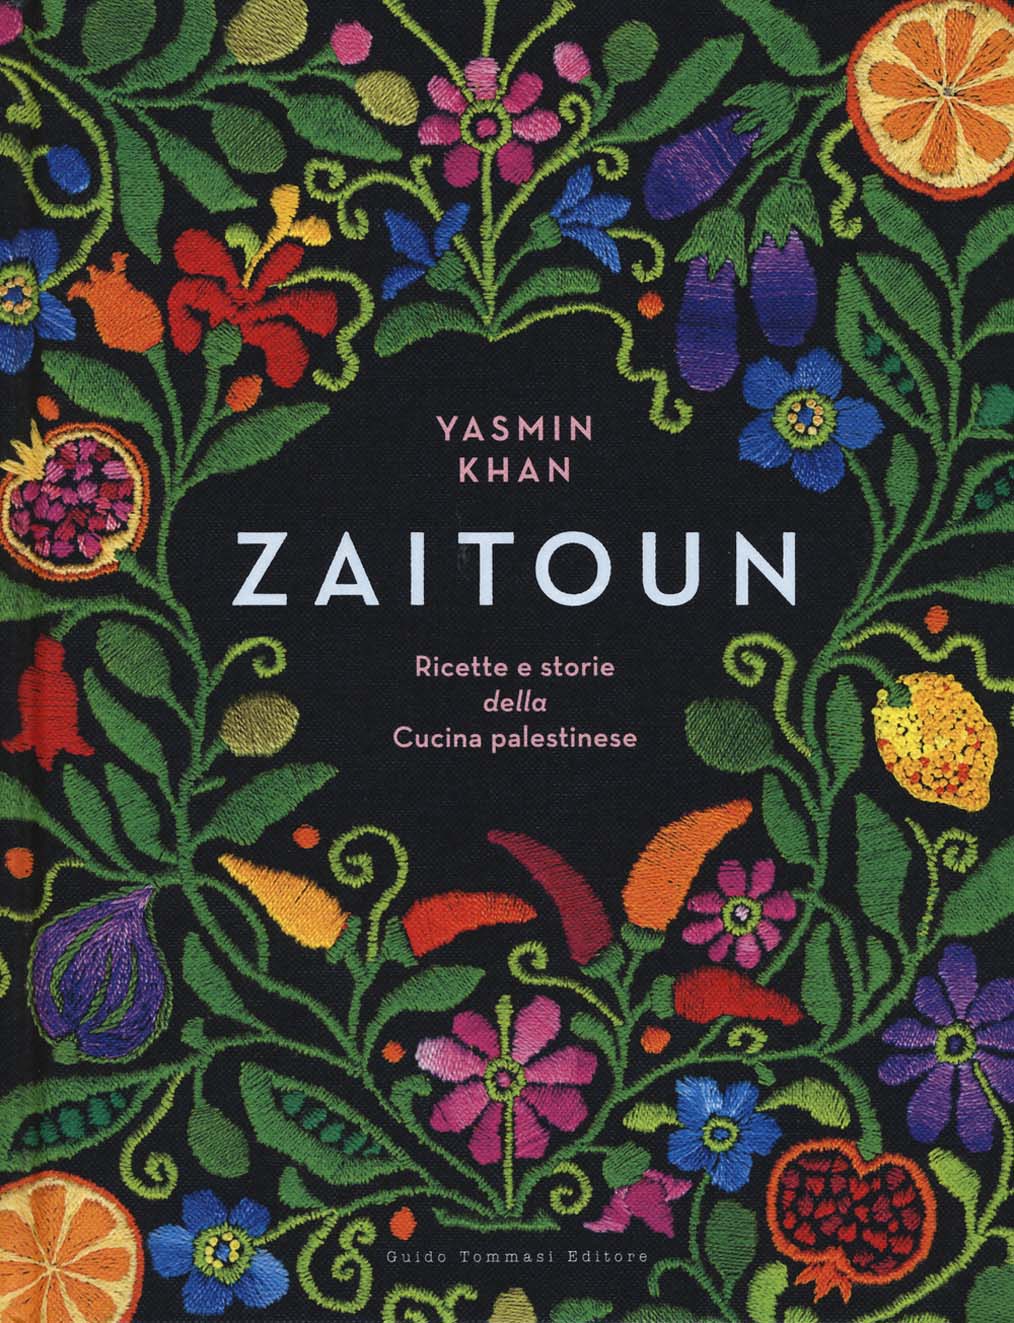 Libri Yasmin Khan - Zaitoun. Ricette E Storie Della Cucina Palestinese NUOVO SIGILLATO, EDIZIONE DEL 02/05/2019 SUBITO DISPONIBILE